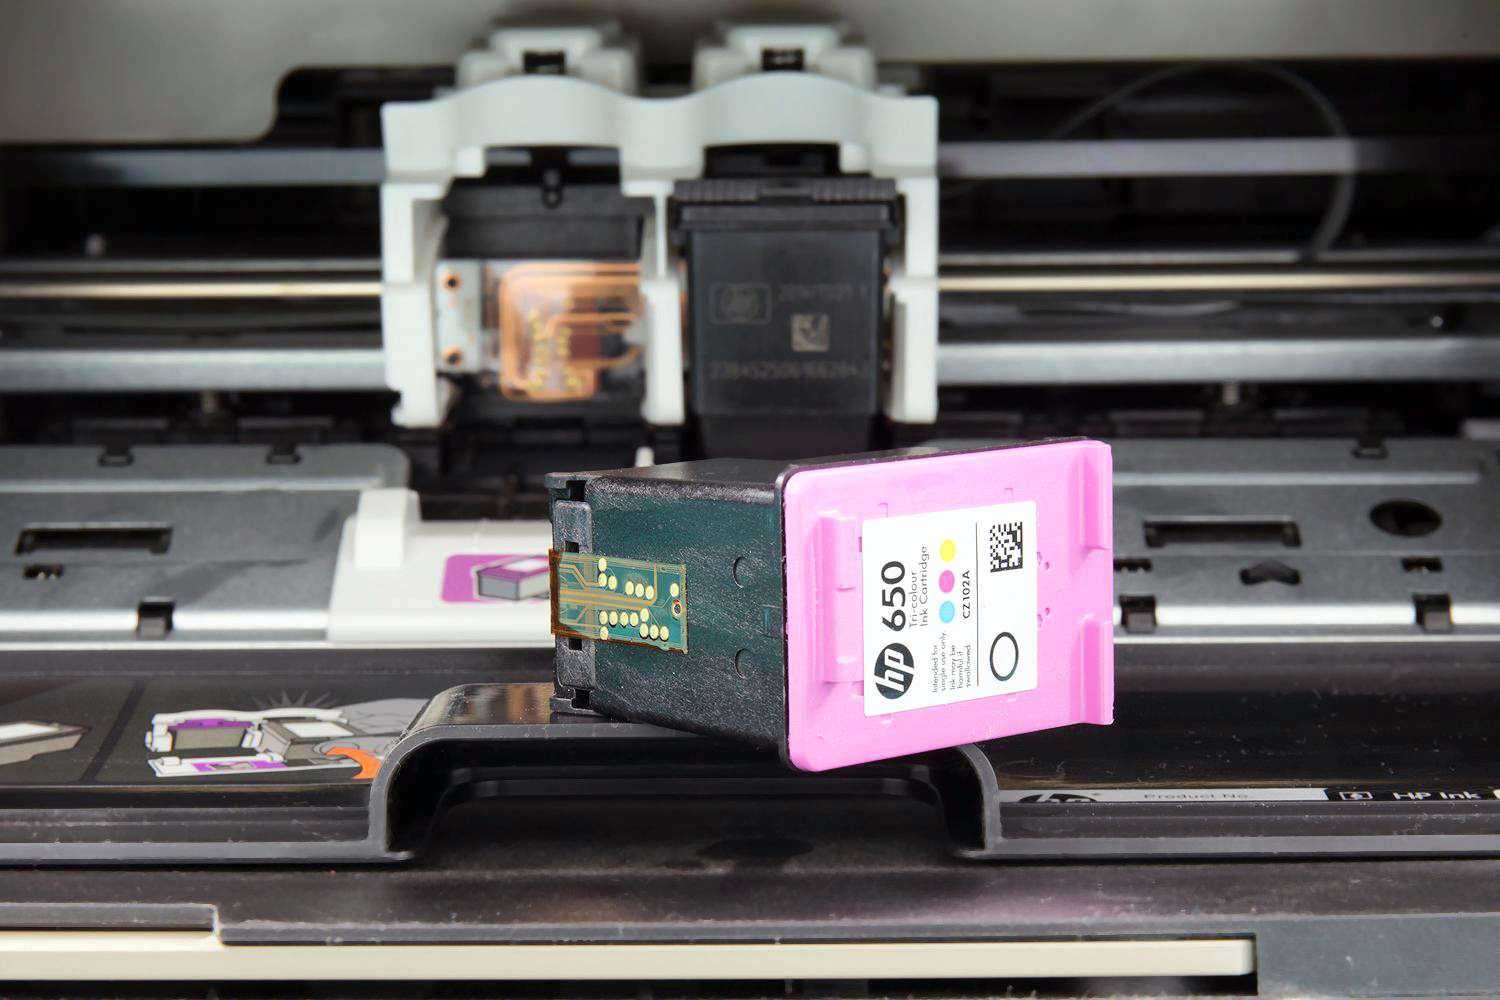 Картриджи во всех принтерах, в том числе, в принтере НР надо заправлять сразу по окончанию краски или незадолго до этого.